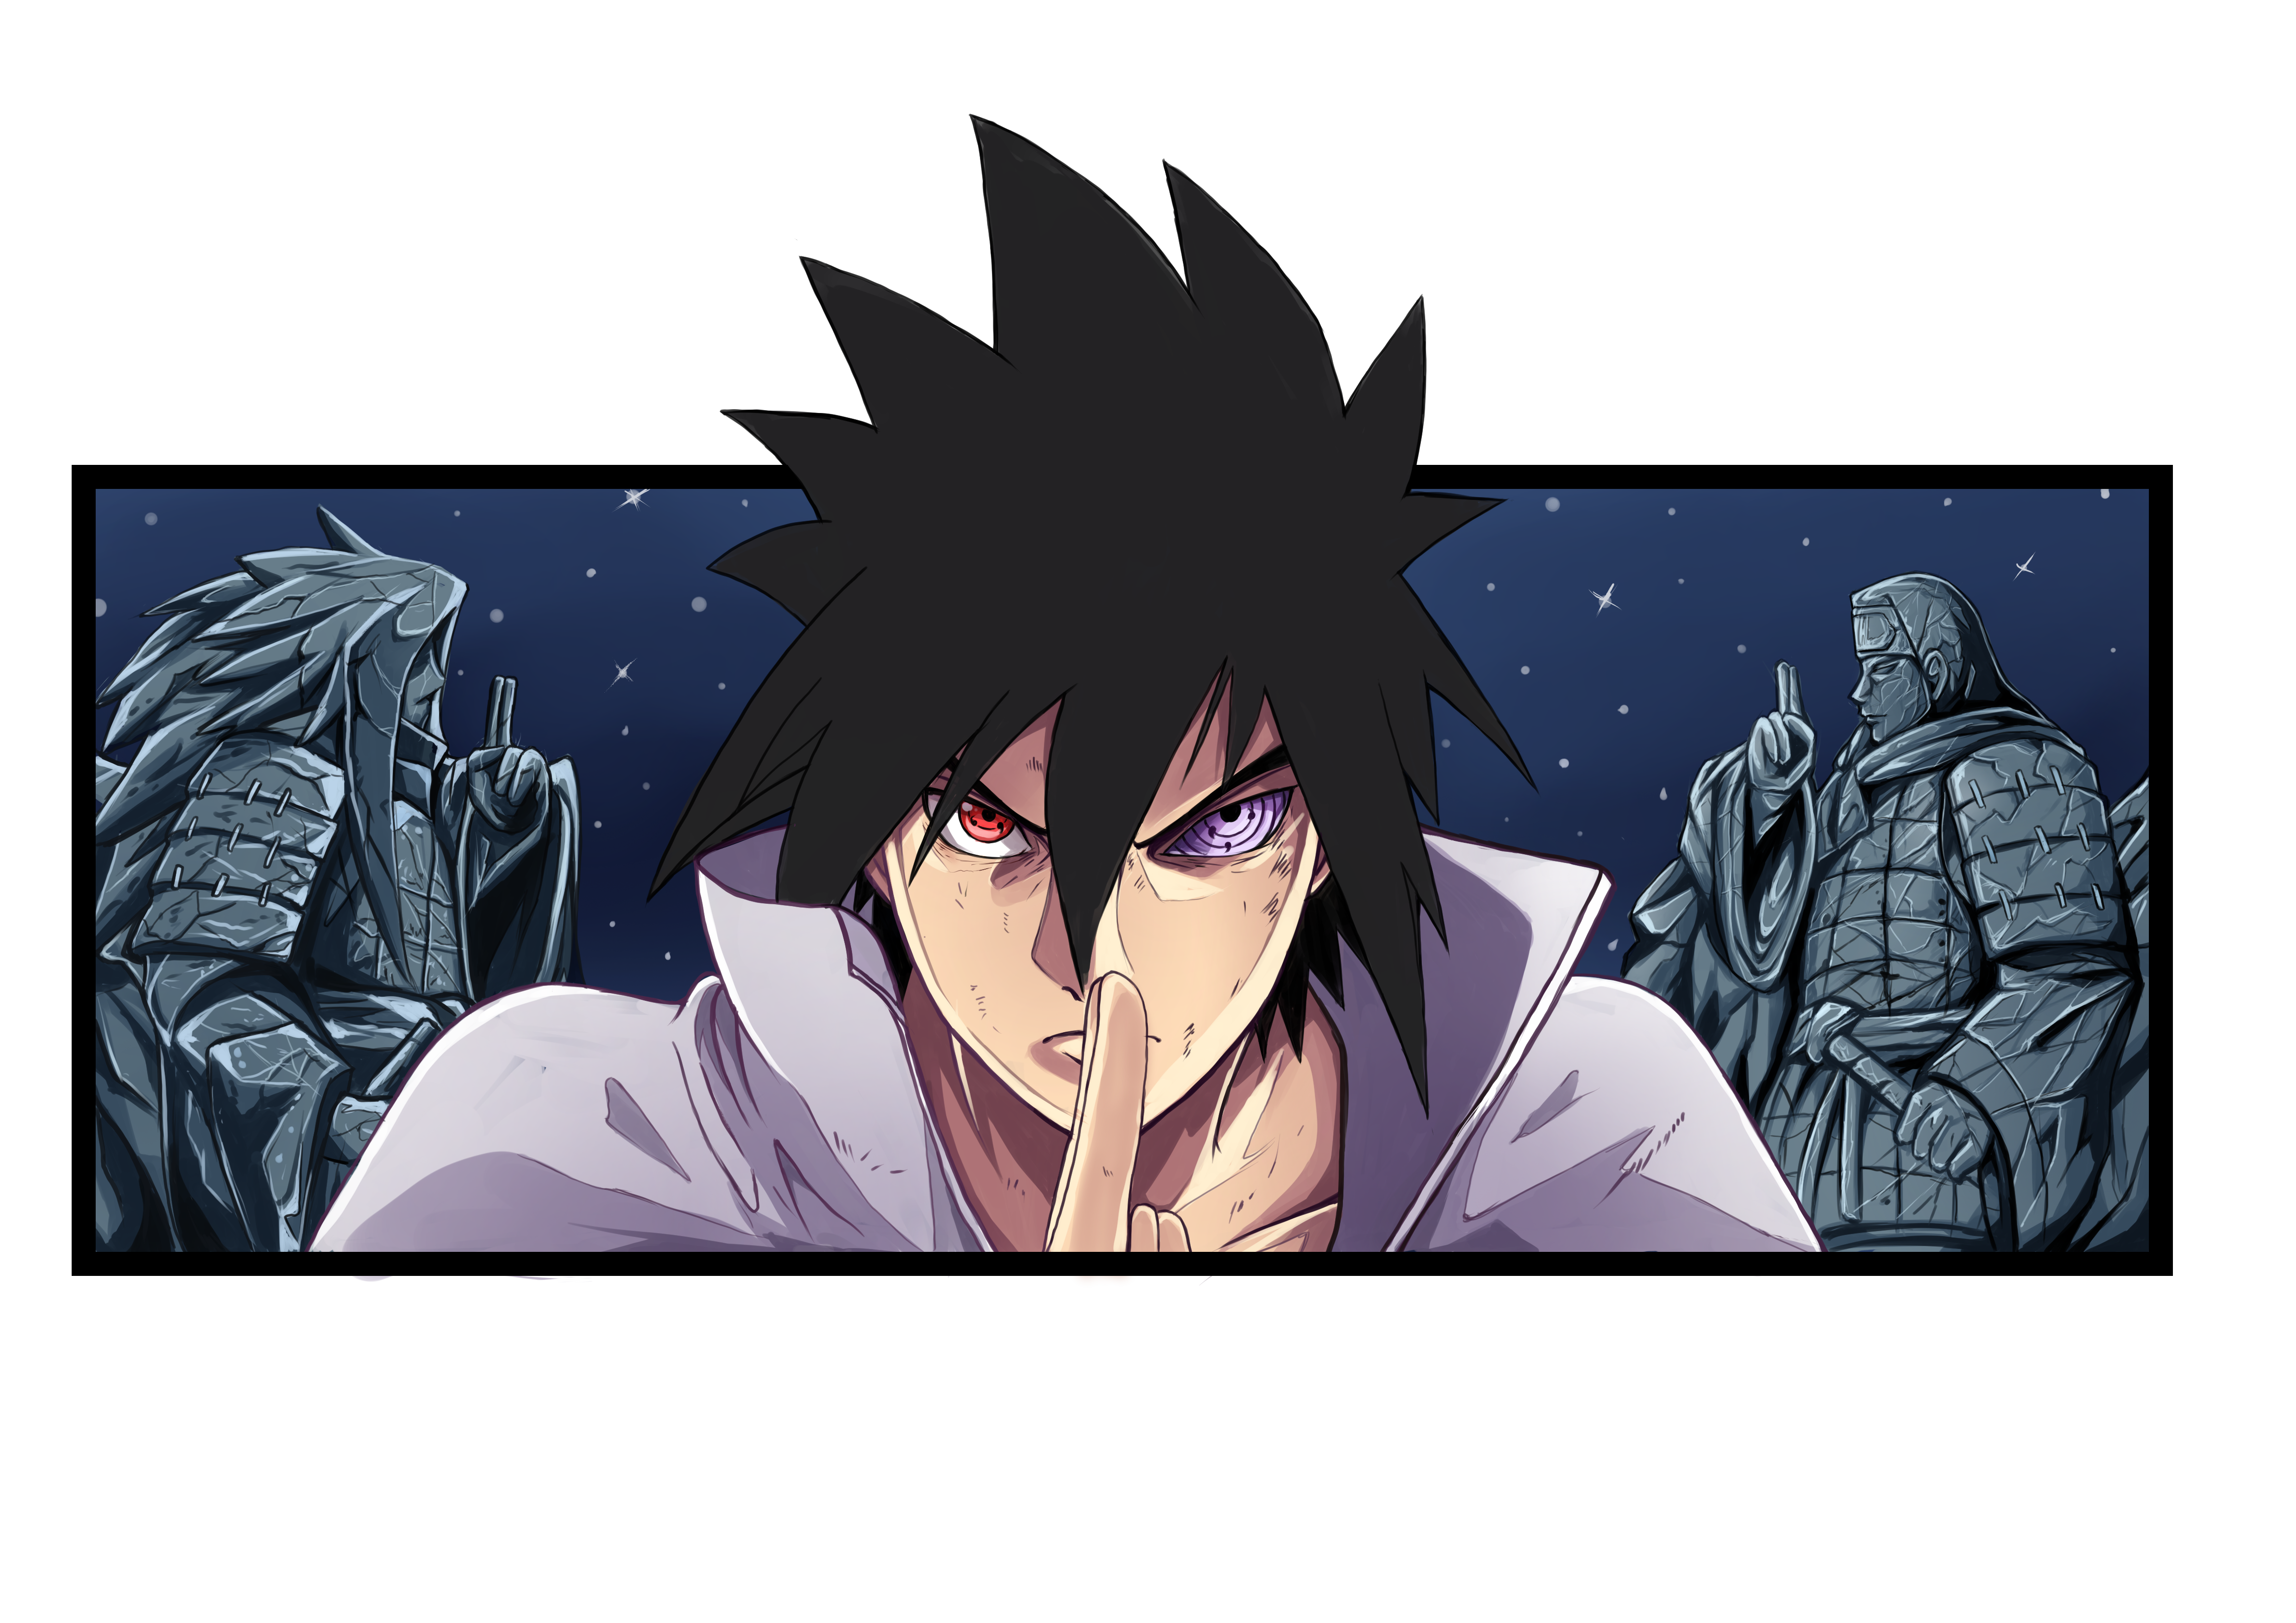 Box Logo im Naruto Style wie Supreme, Später will Orochimaru Sasukes Körper übernehmen, doch gelingt es diesem, das Jutsu von Orochimaru mit seinem Sharingan zu kopieren. Bei diesem Jutsu werden Anwender und Opfer in eine andere Dimension geschickt, und dort beginnt dann der Anwender, sein Opfer mit Schlangen aufzufressen, um so dessen Körper zu übernehmen. Durch das Kopieren des Jutsus ist Sasuke in der Lage, Orochimaru aufzufressen, und danach die ganze Dimension. So hält er Orochimaru in dieser D